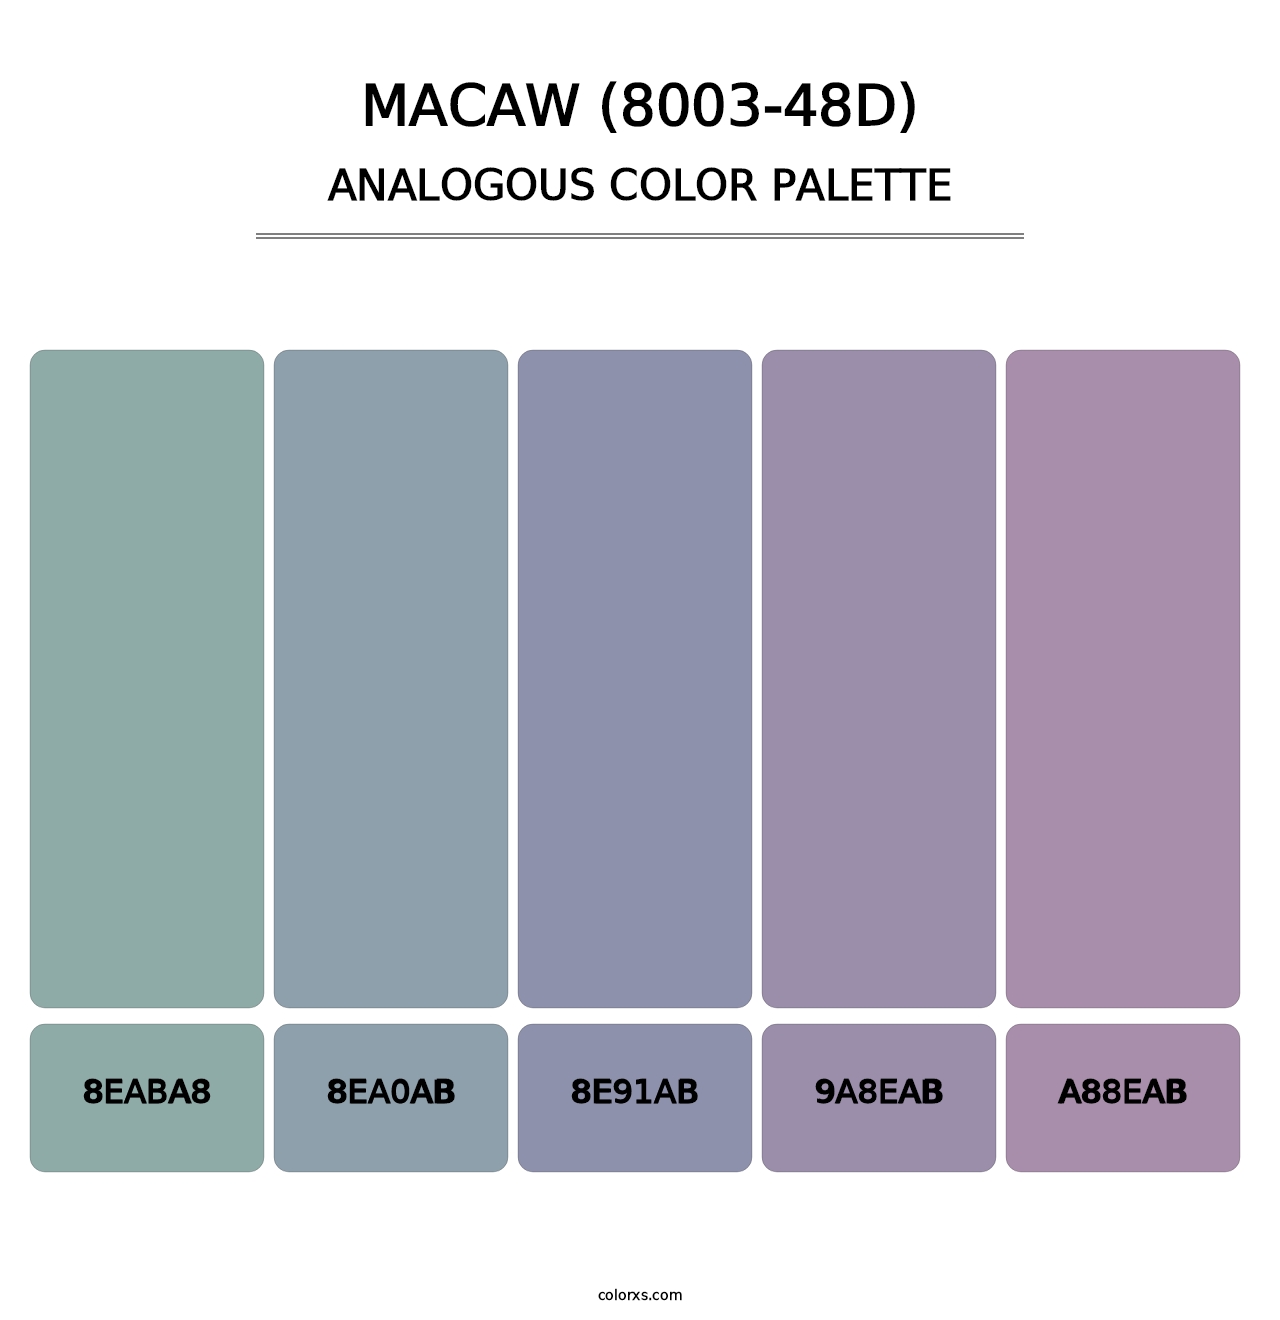 Macaw (8003-48D) - Analogous Color Palette